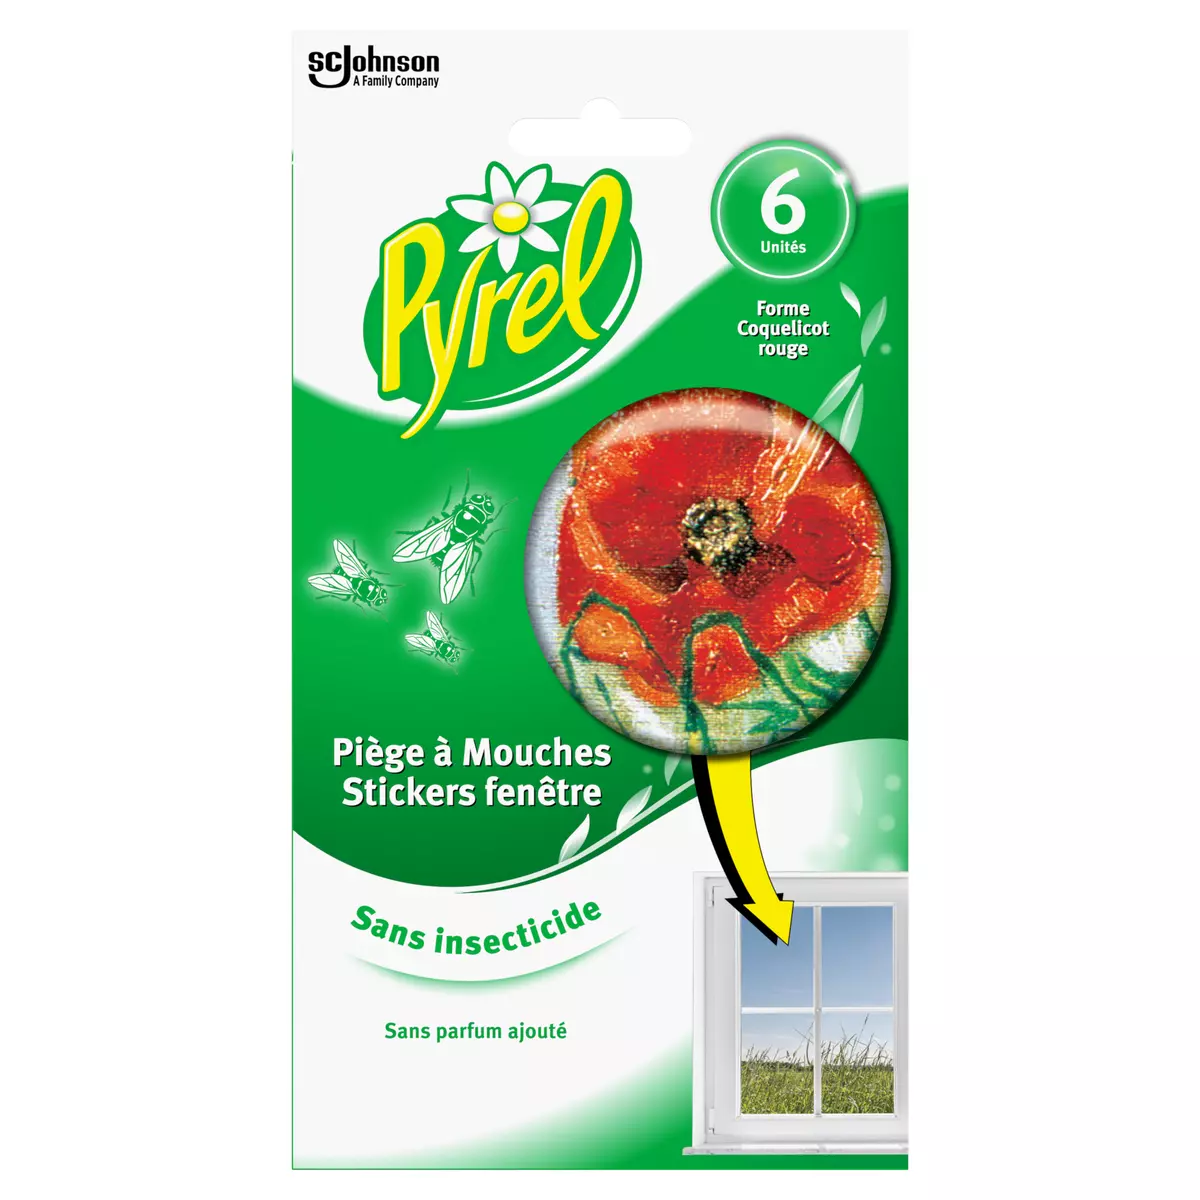 PYREL Piège à mouches en stickers fenêtre sans insecticide 6 stickers